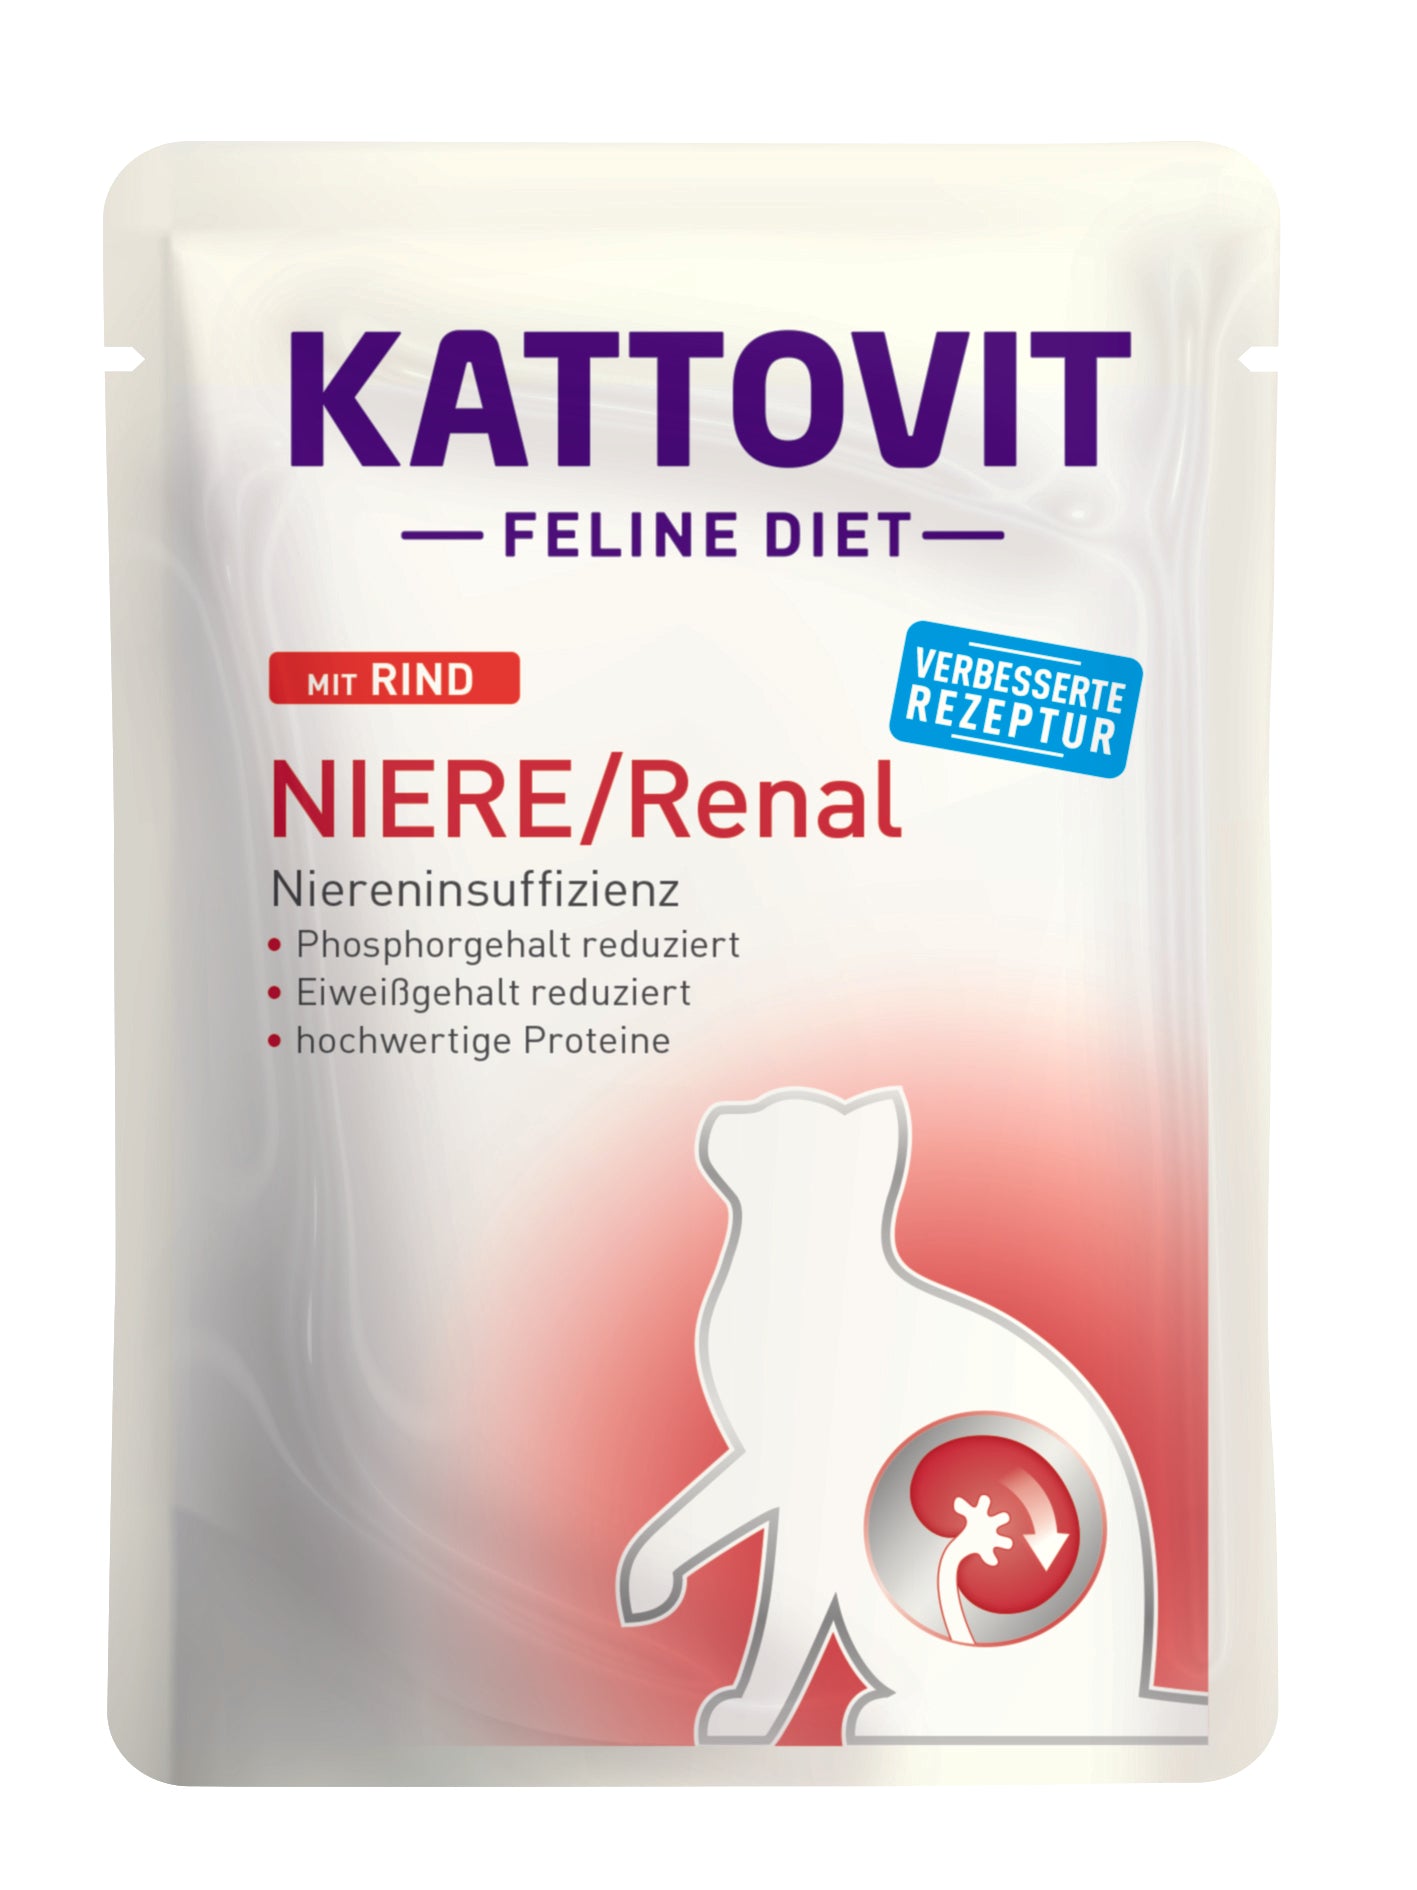 Kattovit Feline Diet Niere/Renal - zoo.de